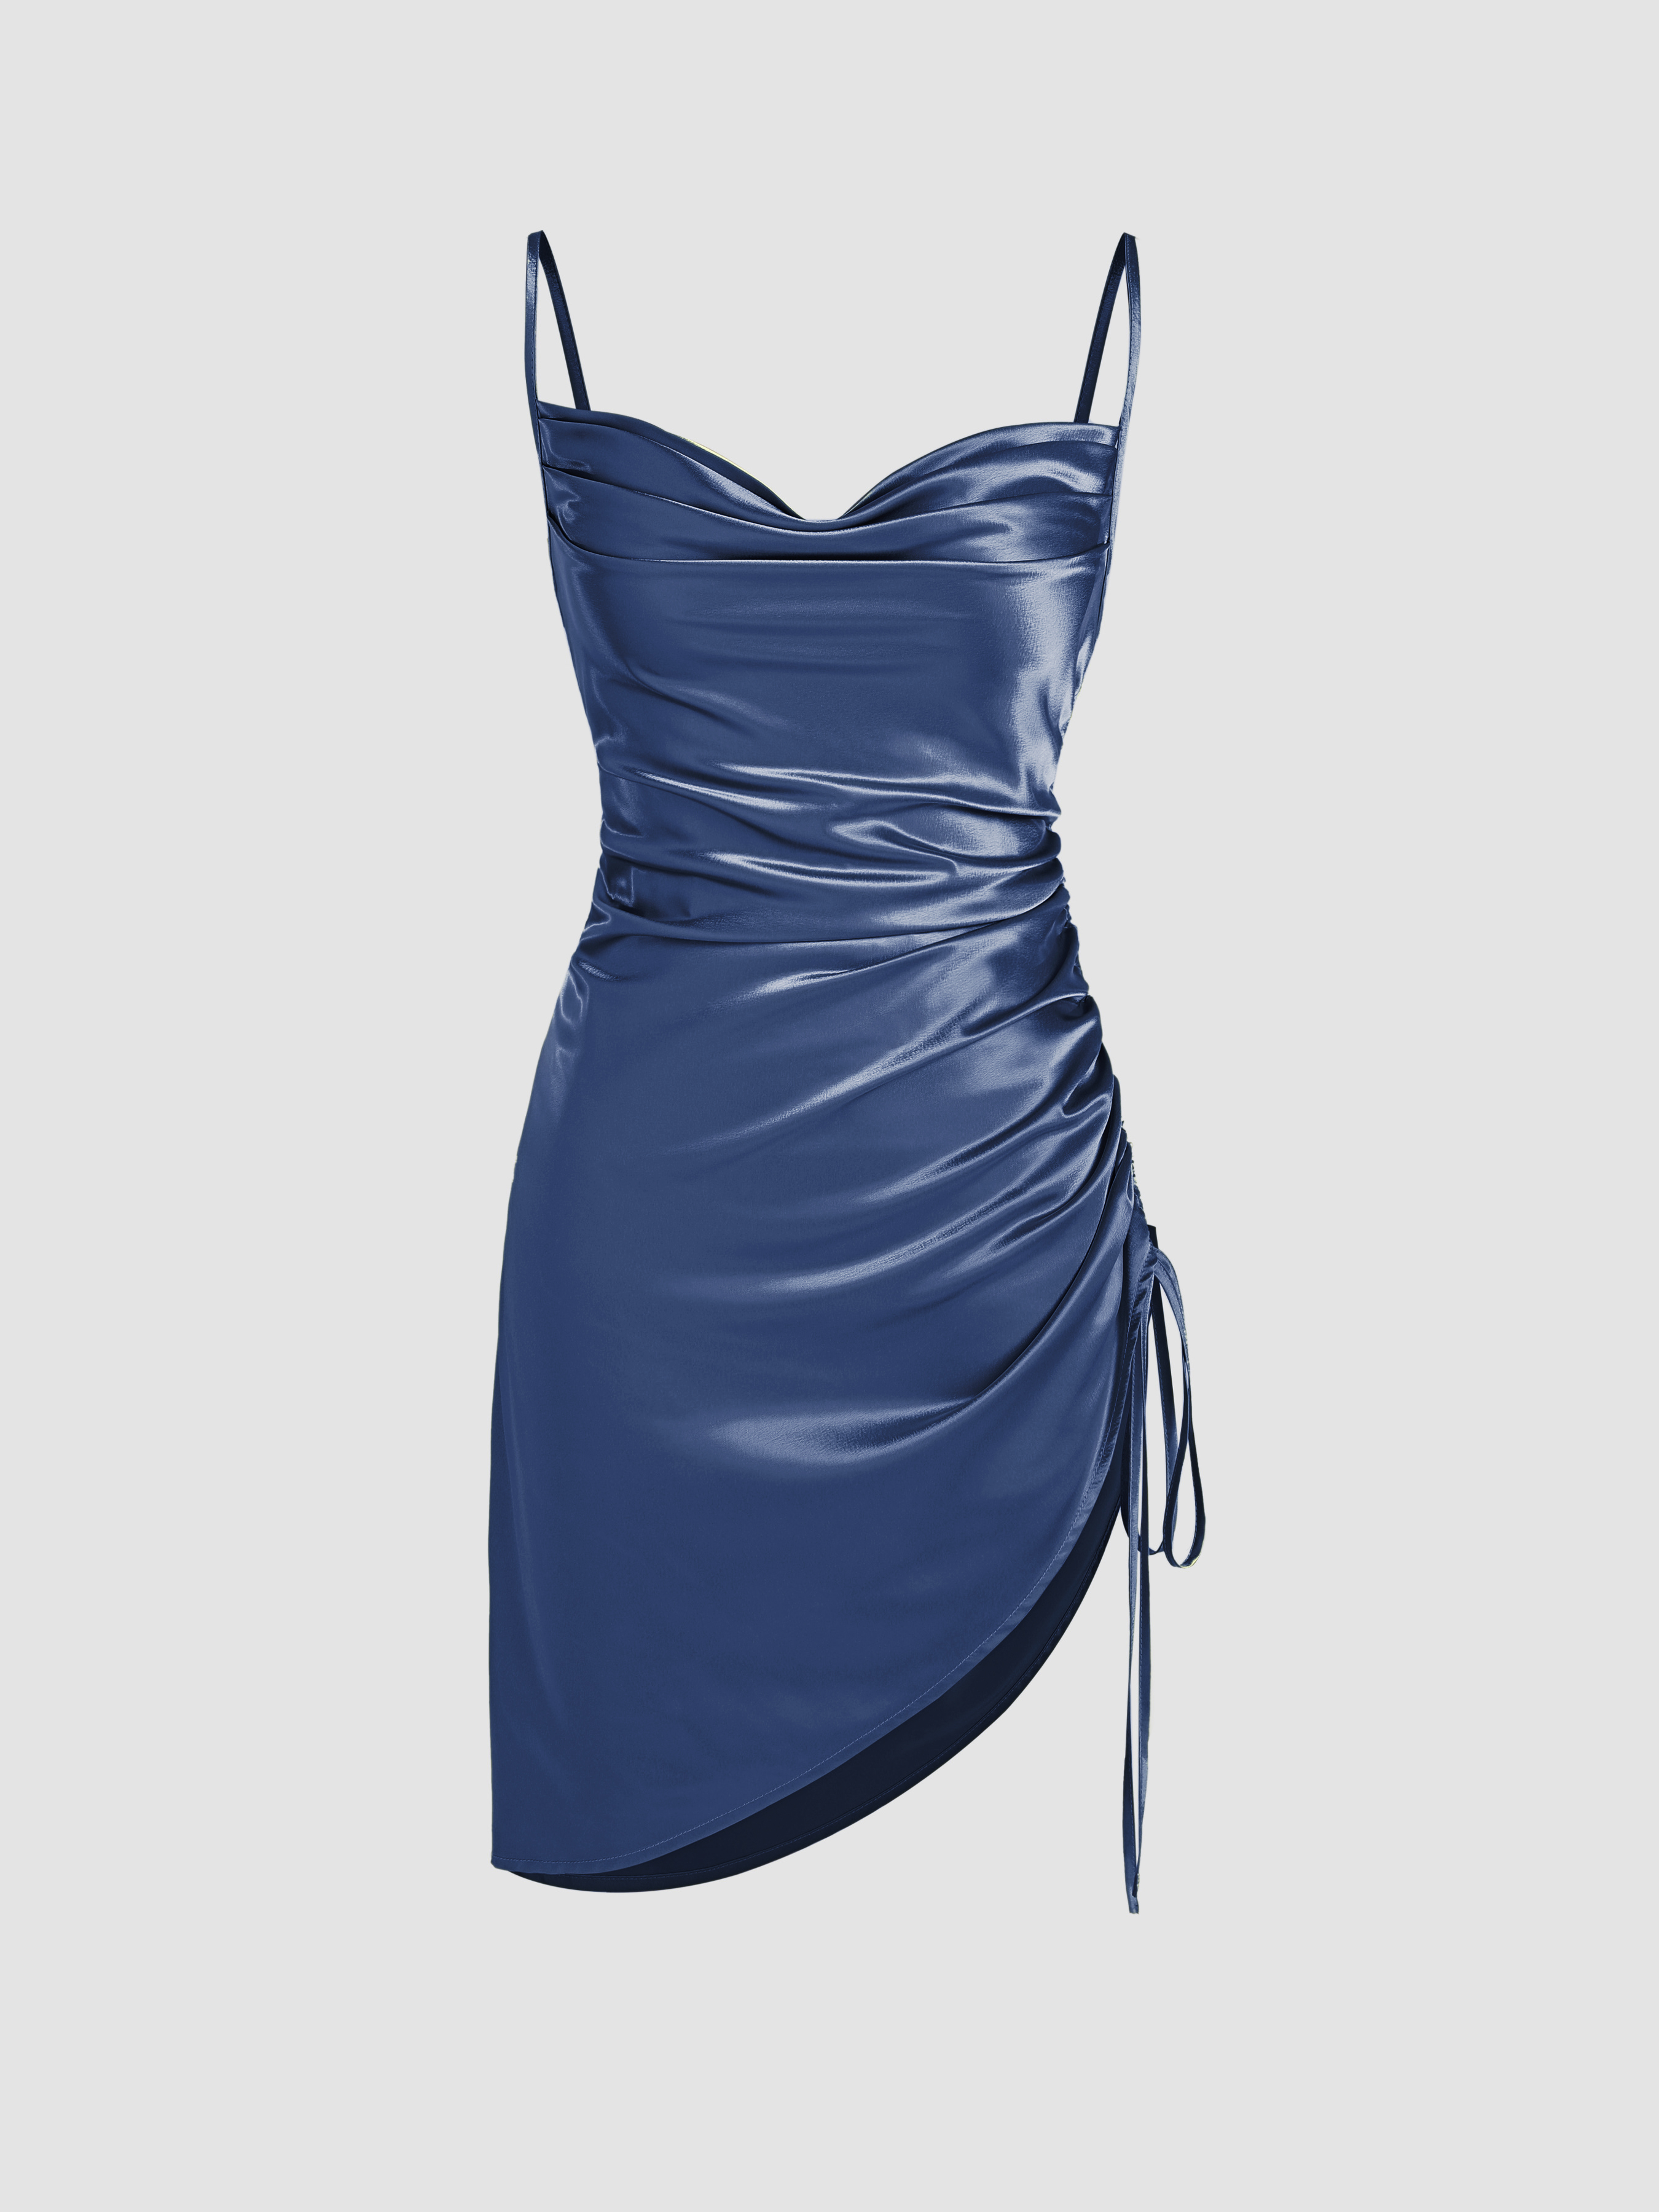 Silk Dresses Australia | Buy Satin Dresses Online | Peppermayo